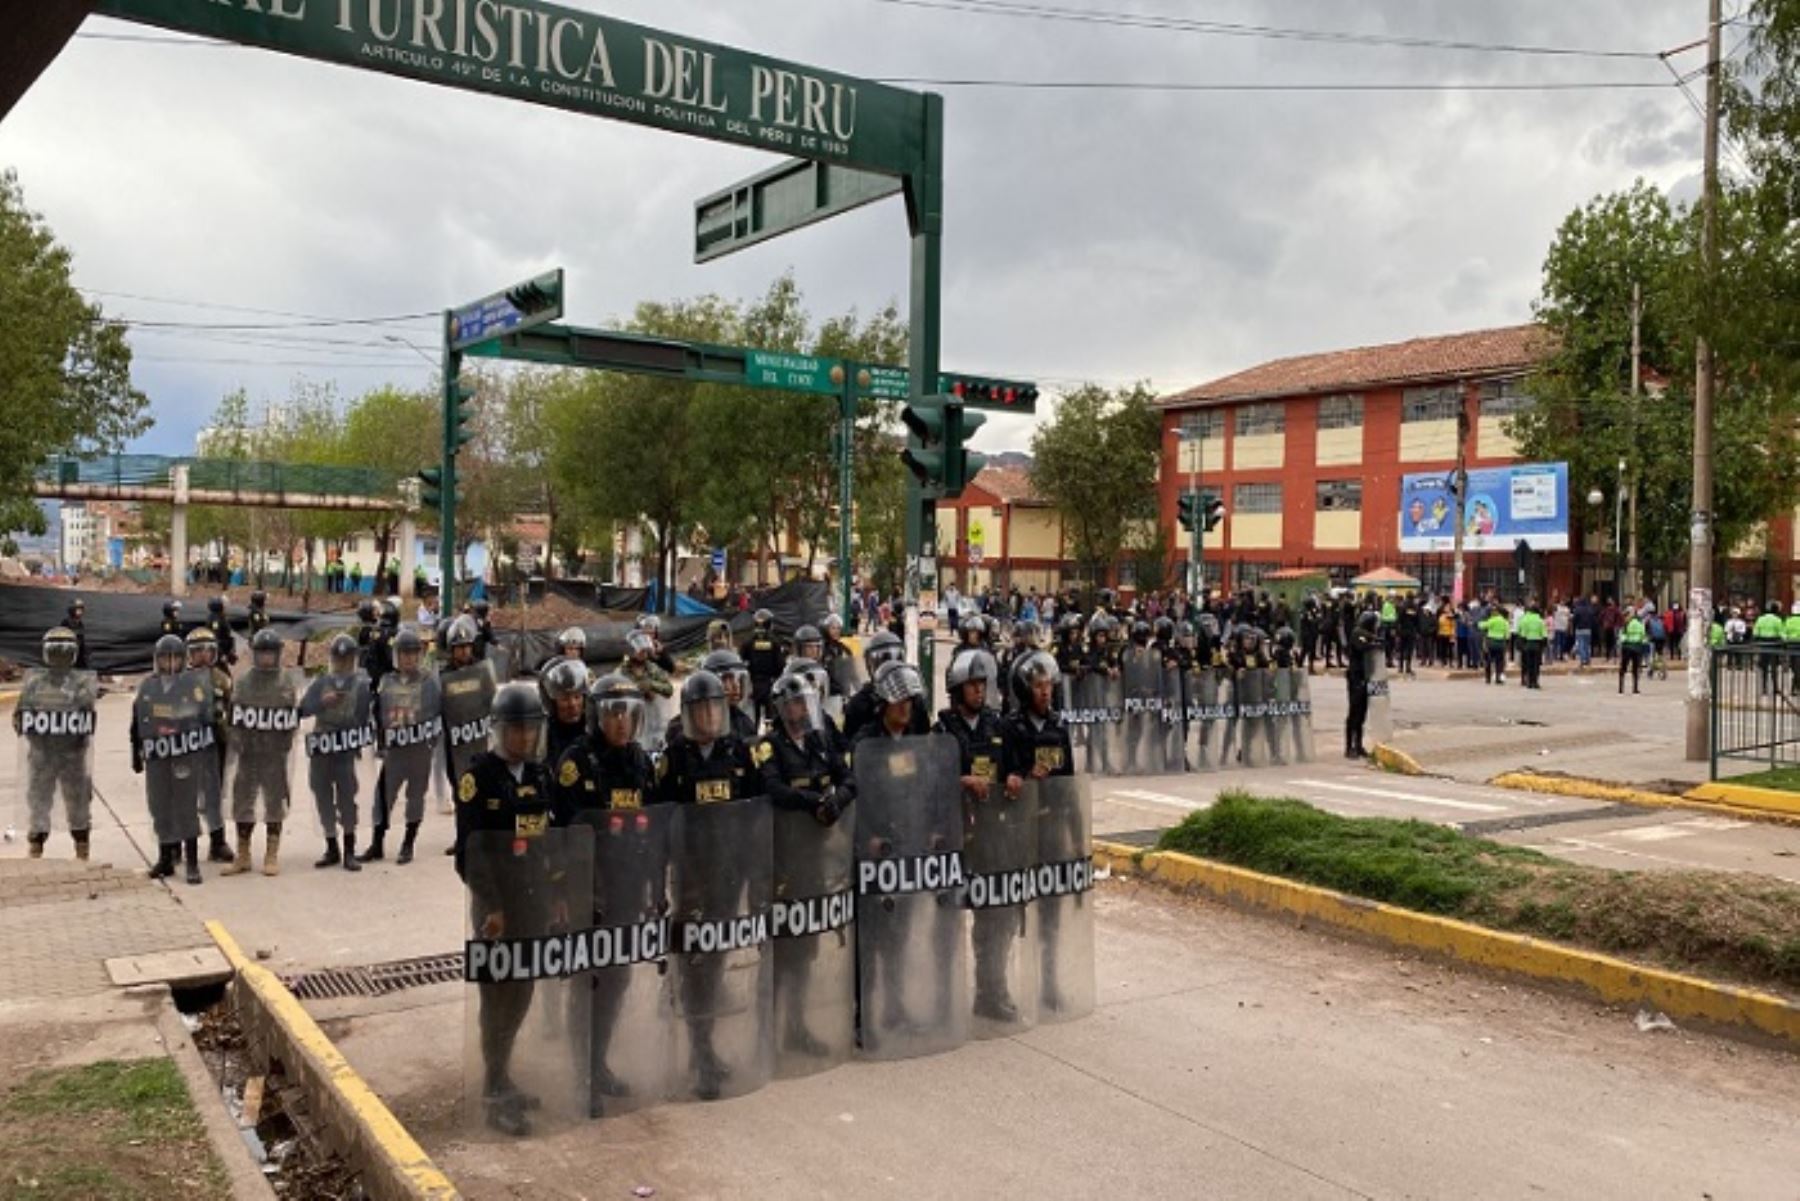 El ministro Rojas Herrera reiteró su pedido de reflexión a los manifestantes por el amor a la patria. Foto: ANDINA/Difusión